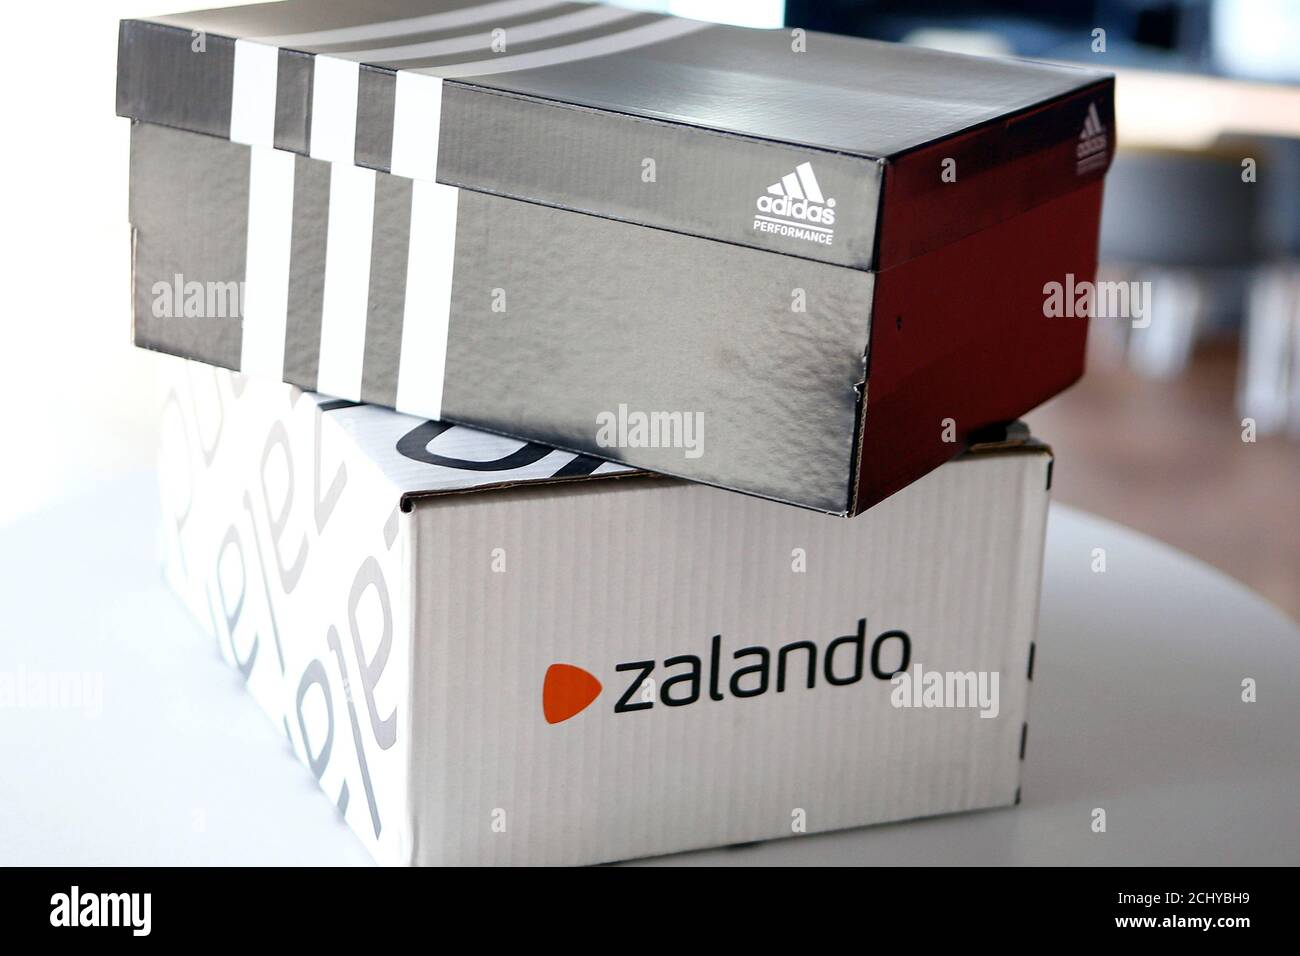 Ein Adidas-Schuhkarton steht über einem Zalando-Karton auf einer  inszenierten Szene in Berlin, Deutschland 8. Juni 2016. REUTERS/Axel  Schmidt Stockfotografie - Alamy